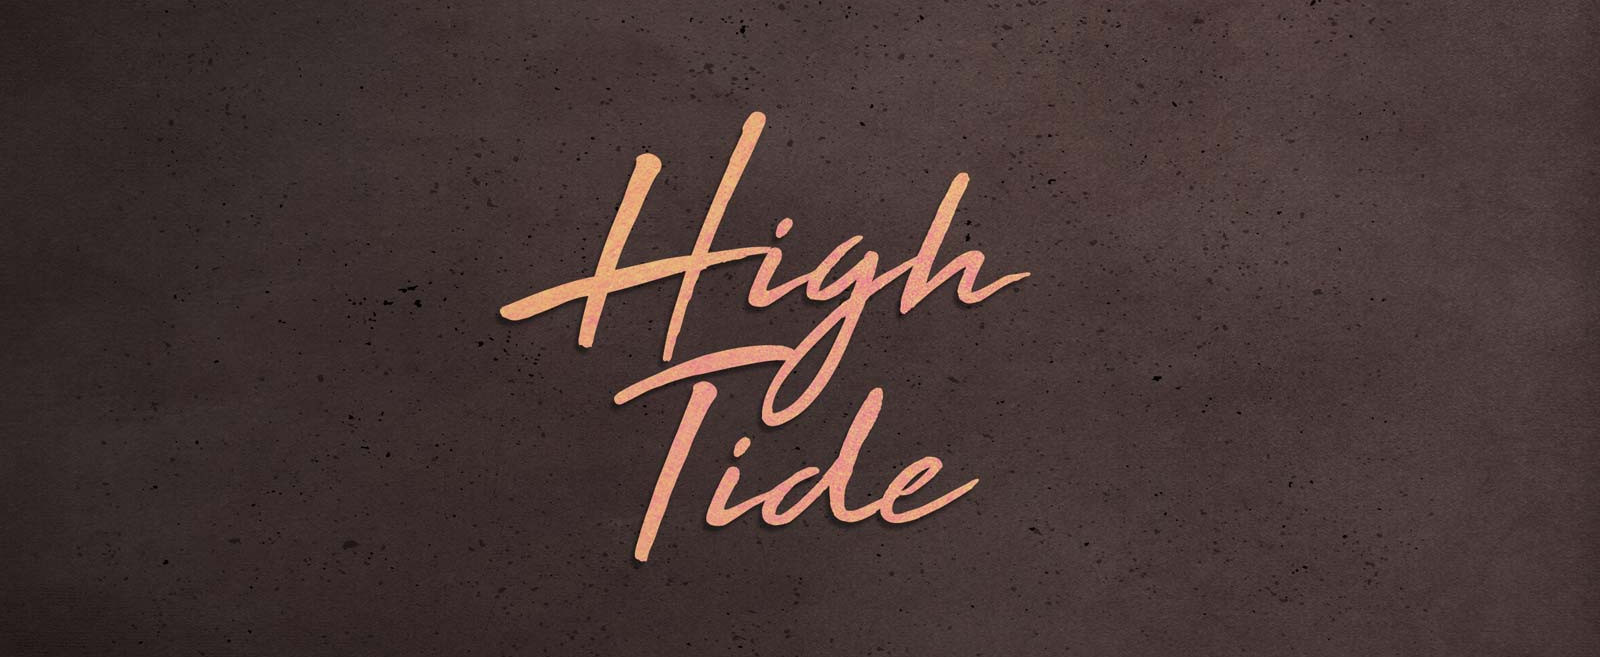 High Tide Font Free Download